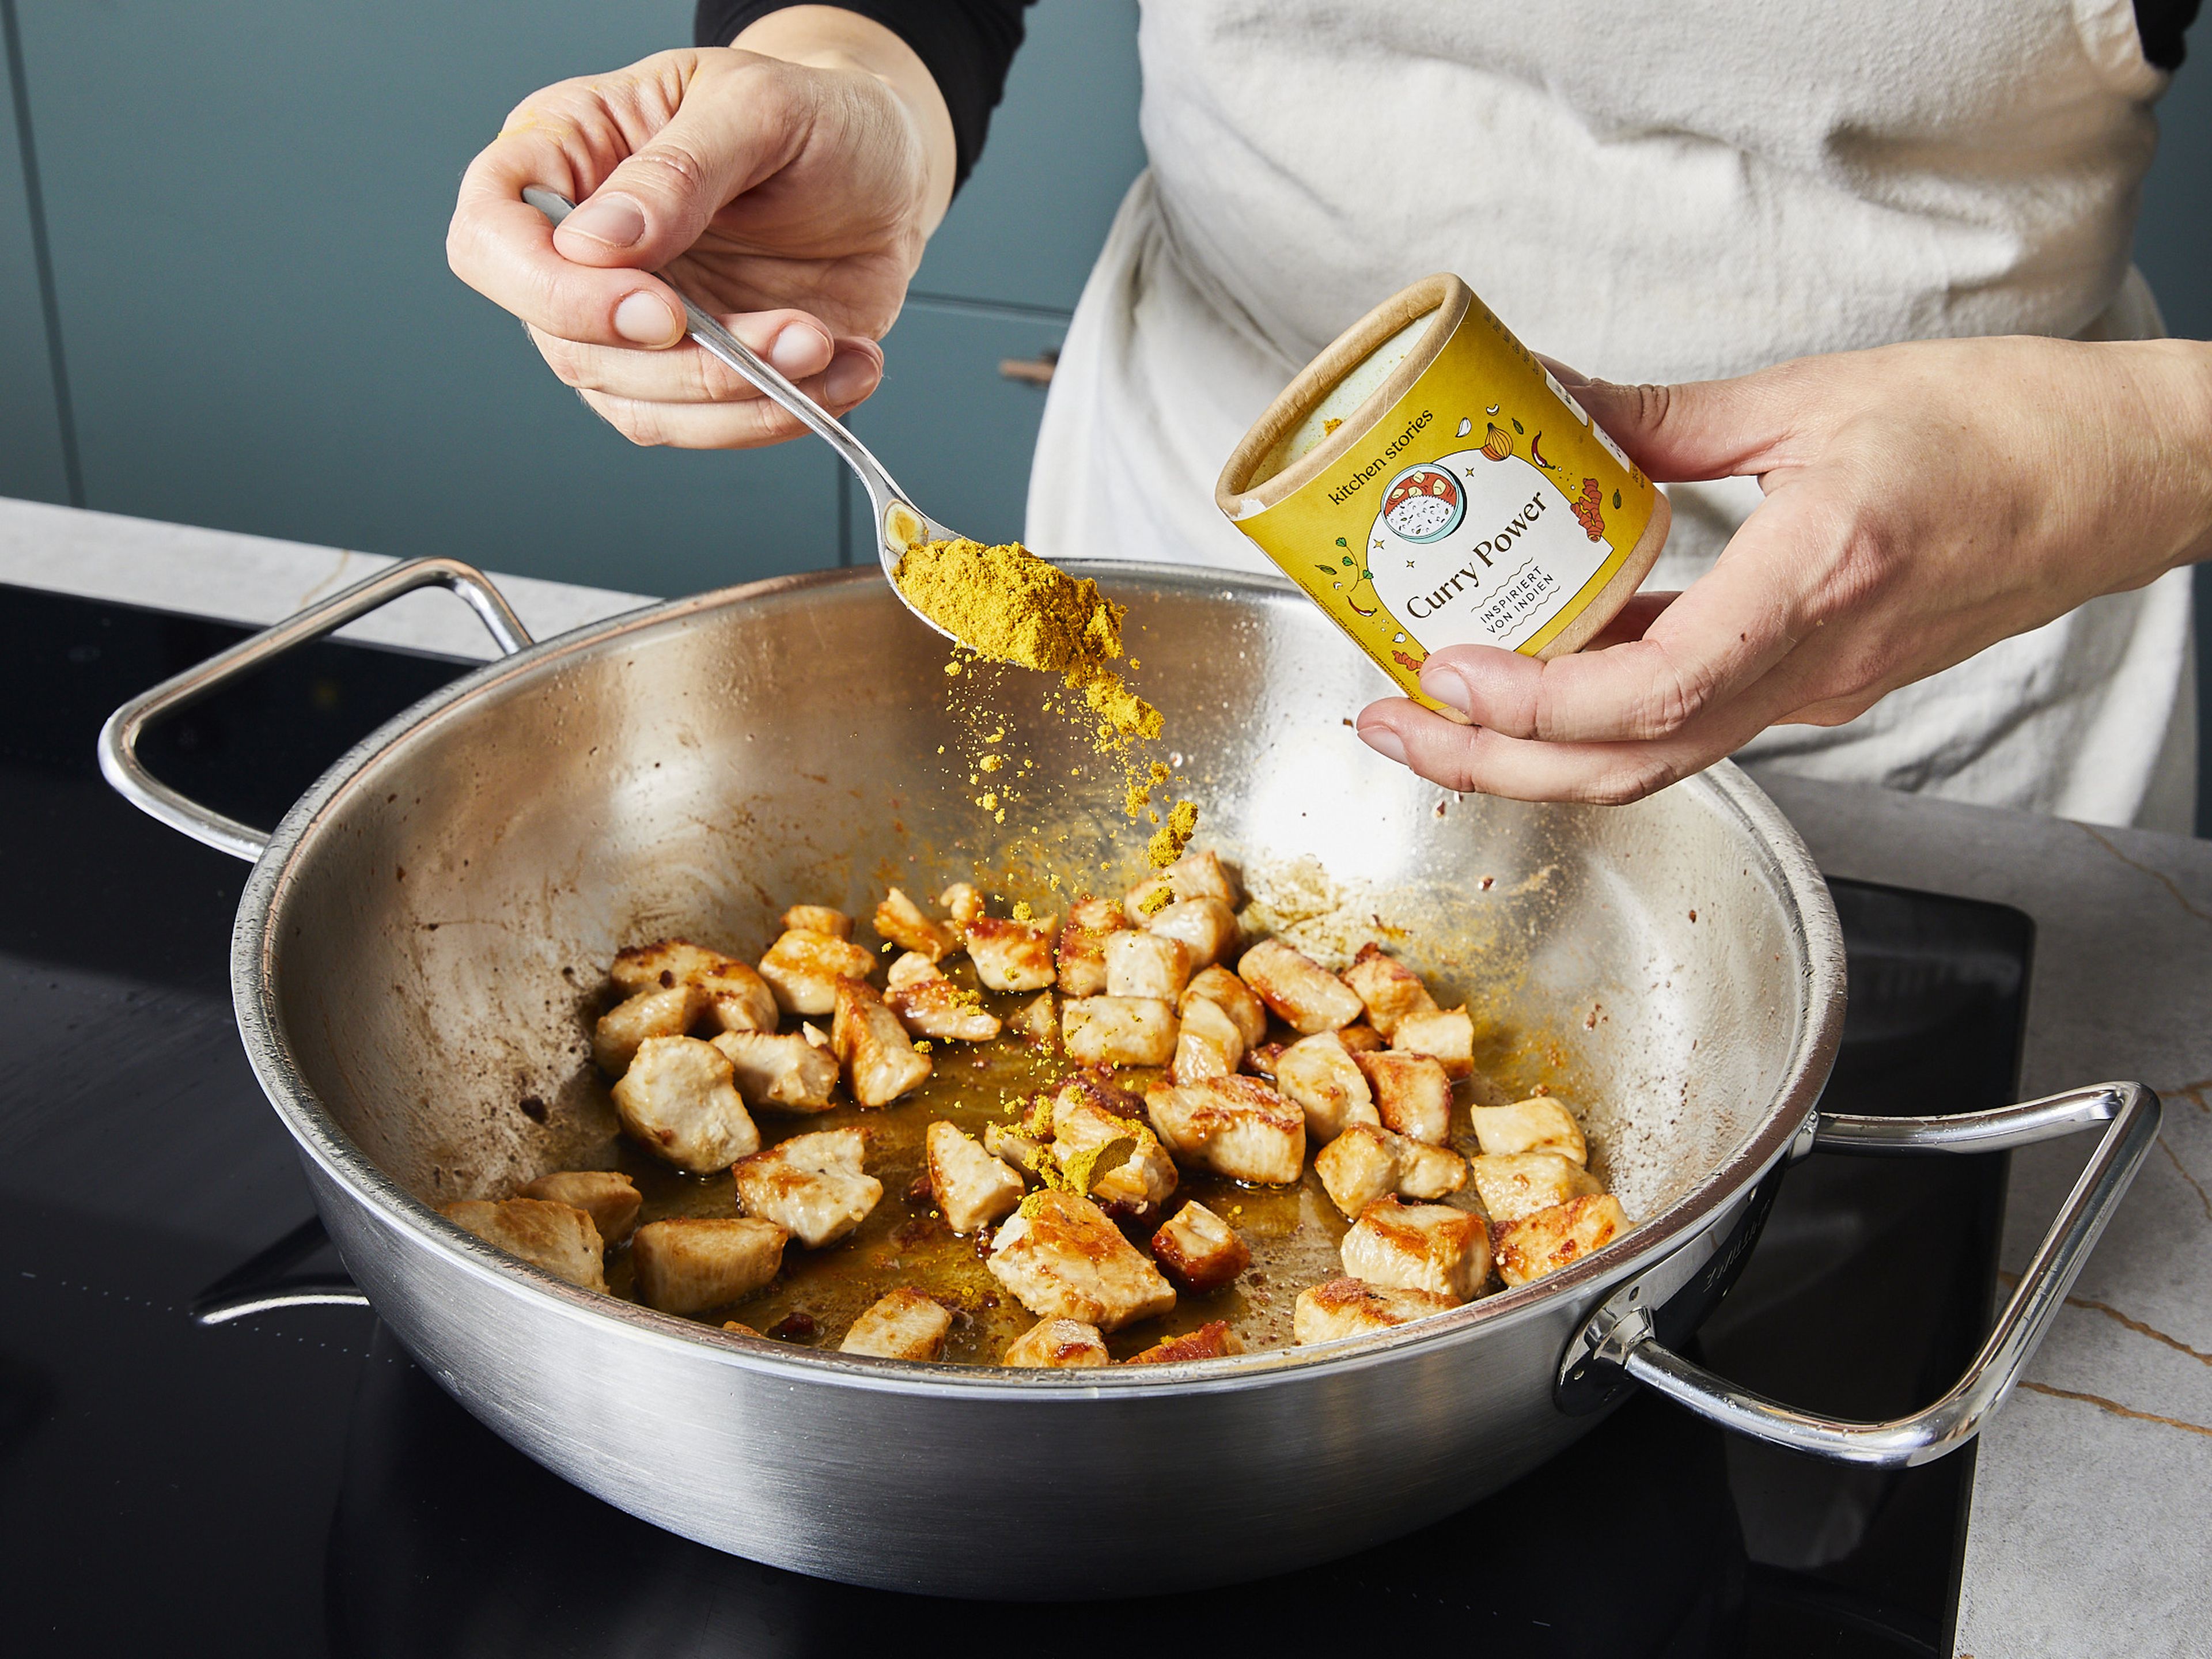 Die Hähnchenbrustfilets in ca. 3x3 cm große Würfel schneiden und mit Salz würzen. Das Öl in einer großen beschichteten Pfanne bei mittlerer Hitze erwärmen und das Hähnchenfleisch ca. 4–6 Min. anbraten, bis es goldbraun und durchgebraten ist. Dann die Curry Power Gewürzmischung oder die Alternative hinzugeben und etwa 1 Min. lang braten, bis es aromatisch duftet.